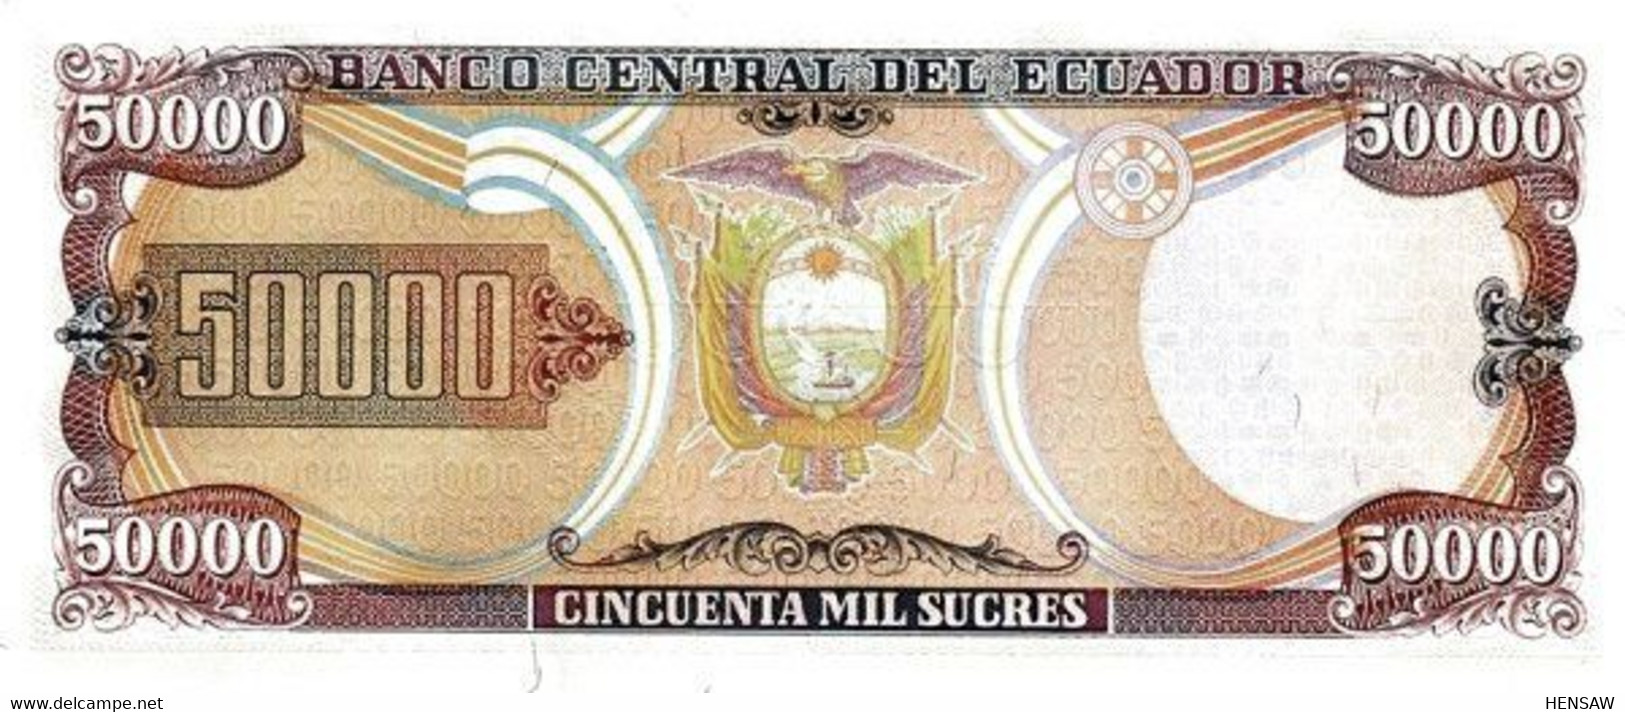 ECUADOR 50000 SUCRES 1999 P 130e UNC SC NUEVO - Ecuador